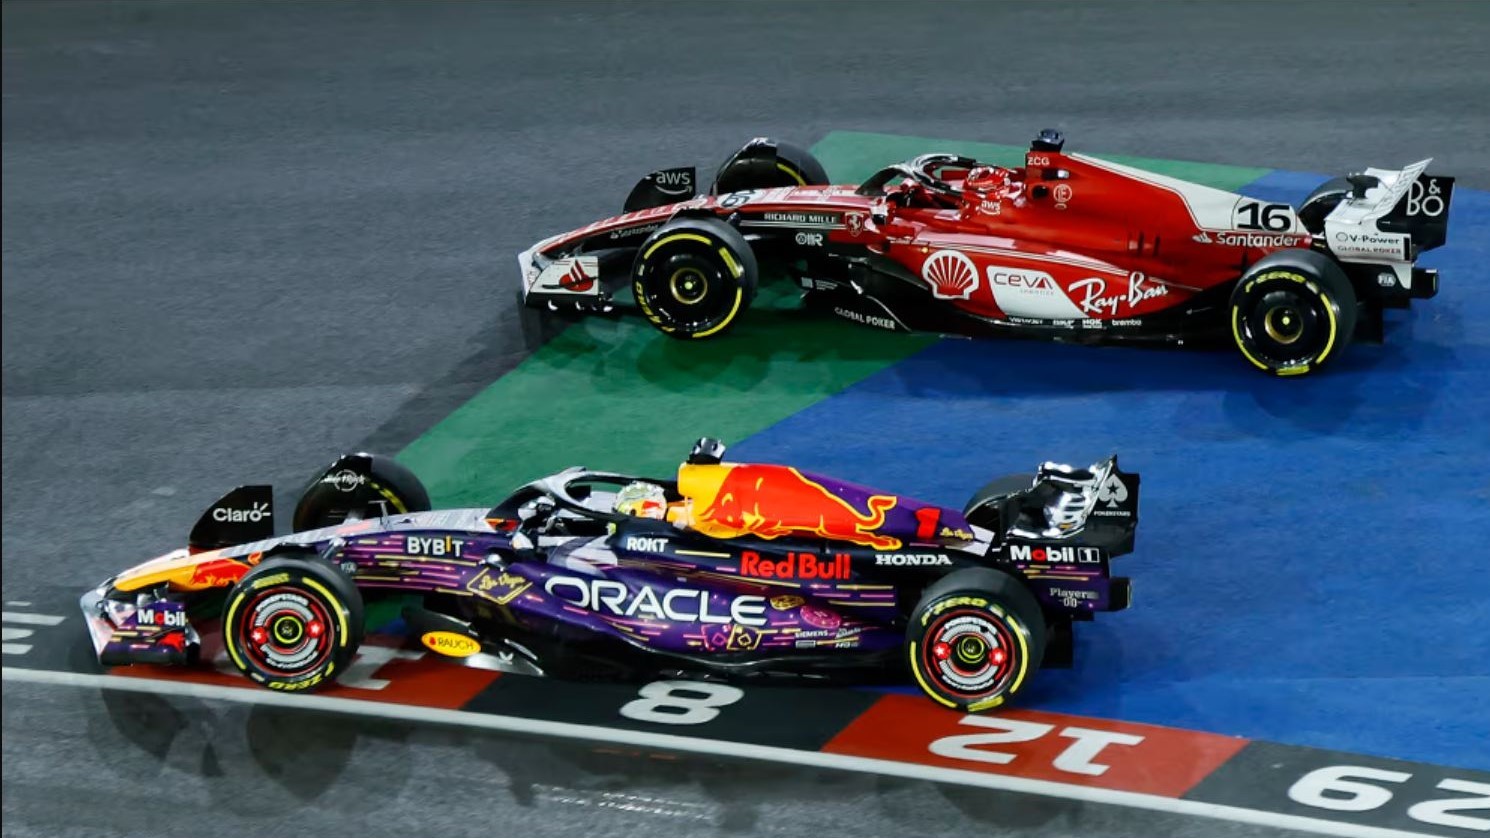 Las Vegas GP Verstappen and Leclerc battle - Image Credit formula1.com